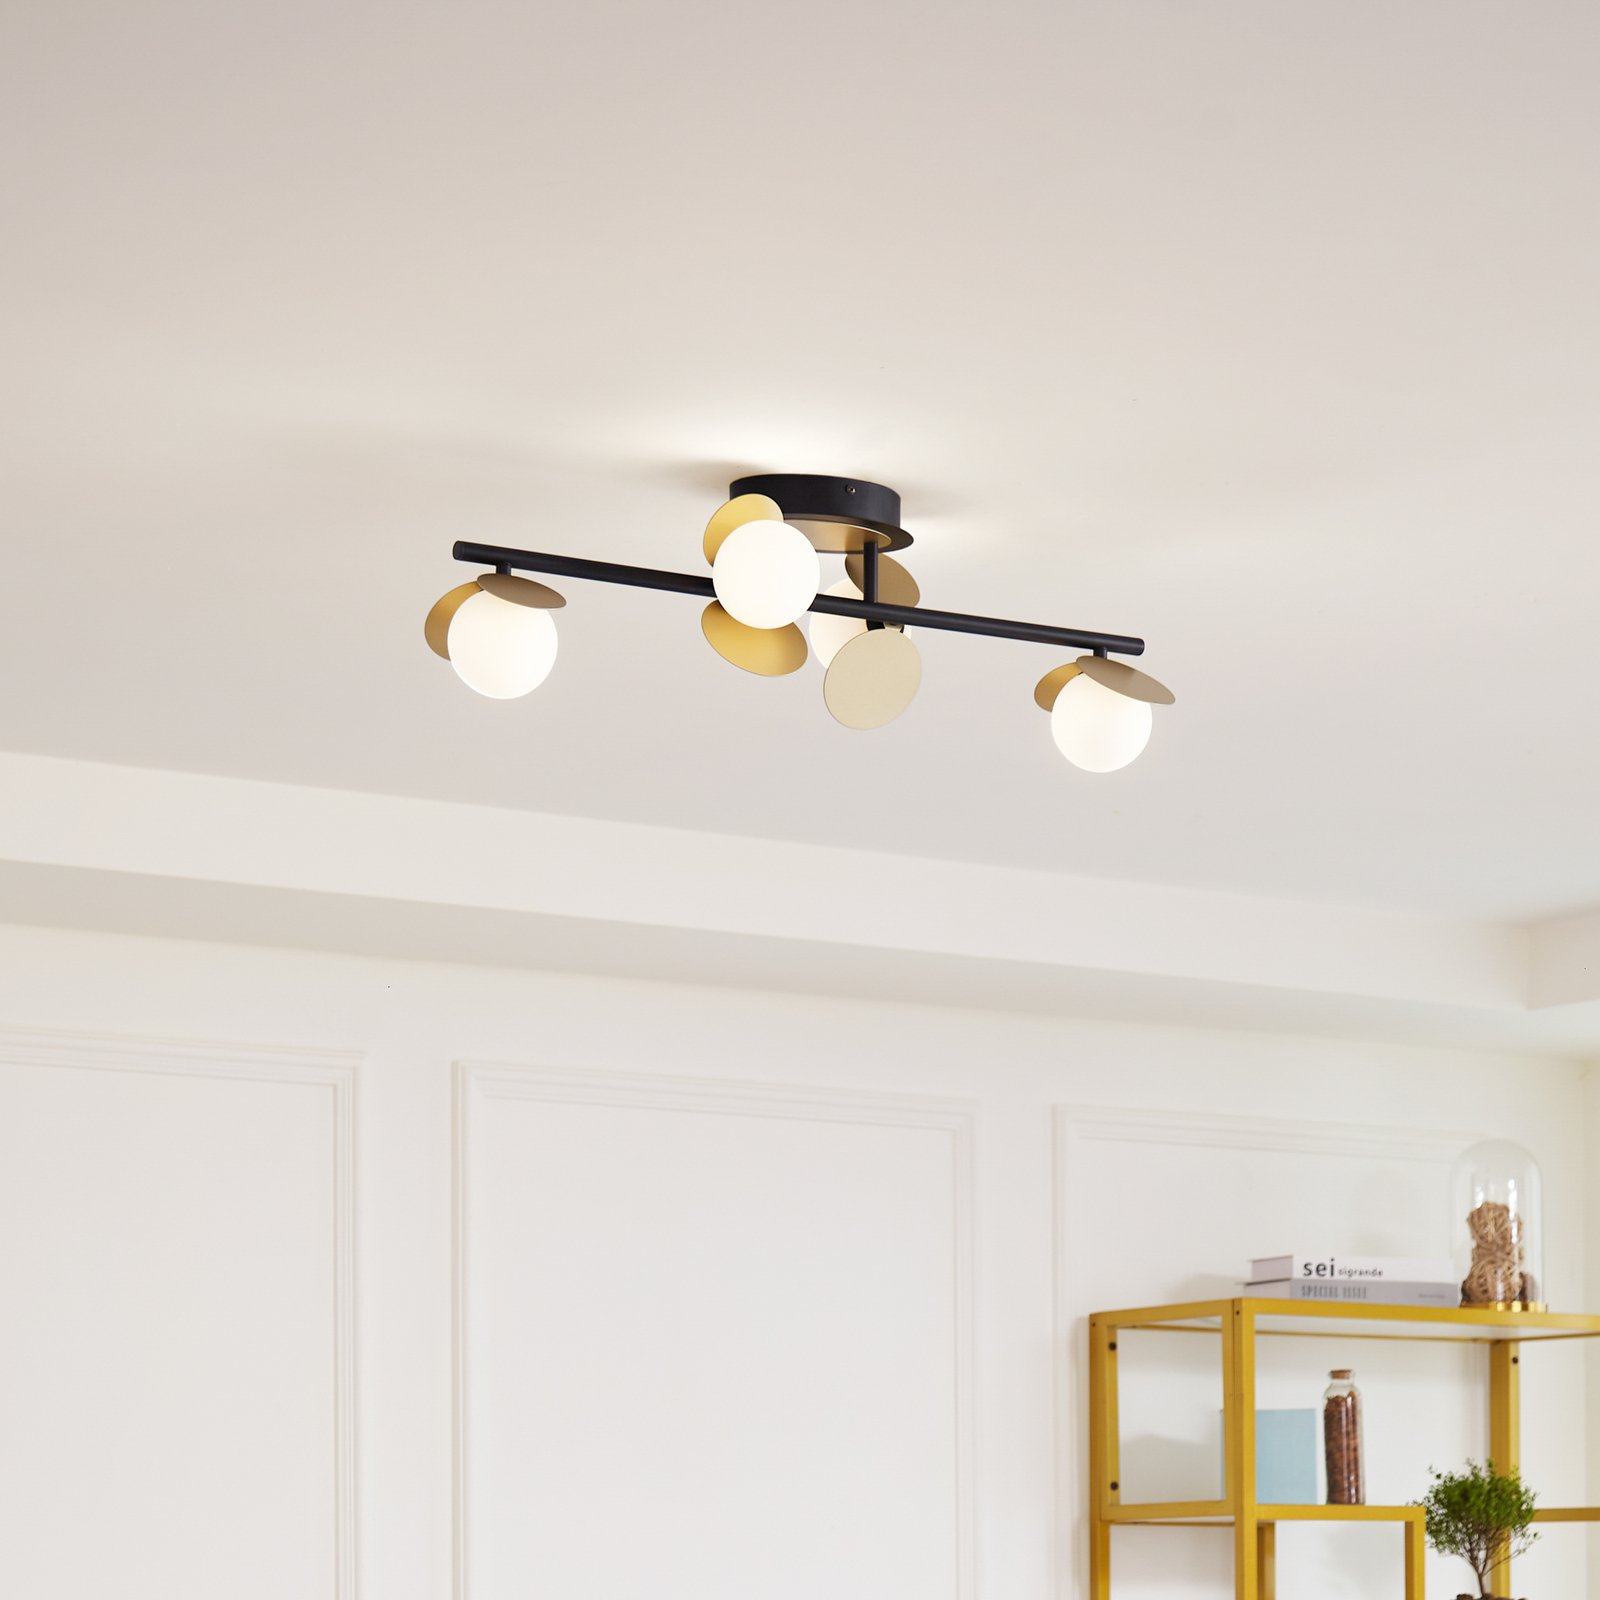 Lucande LED ceiling lamp Pallo, 4-bulb, black/gold, glass